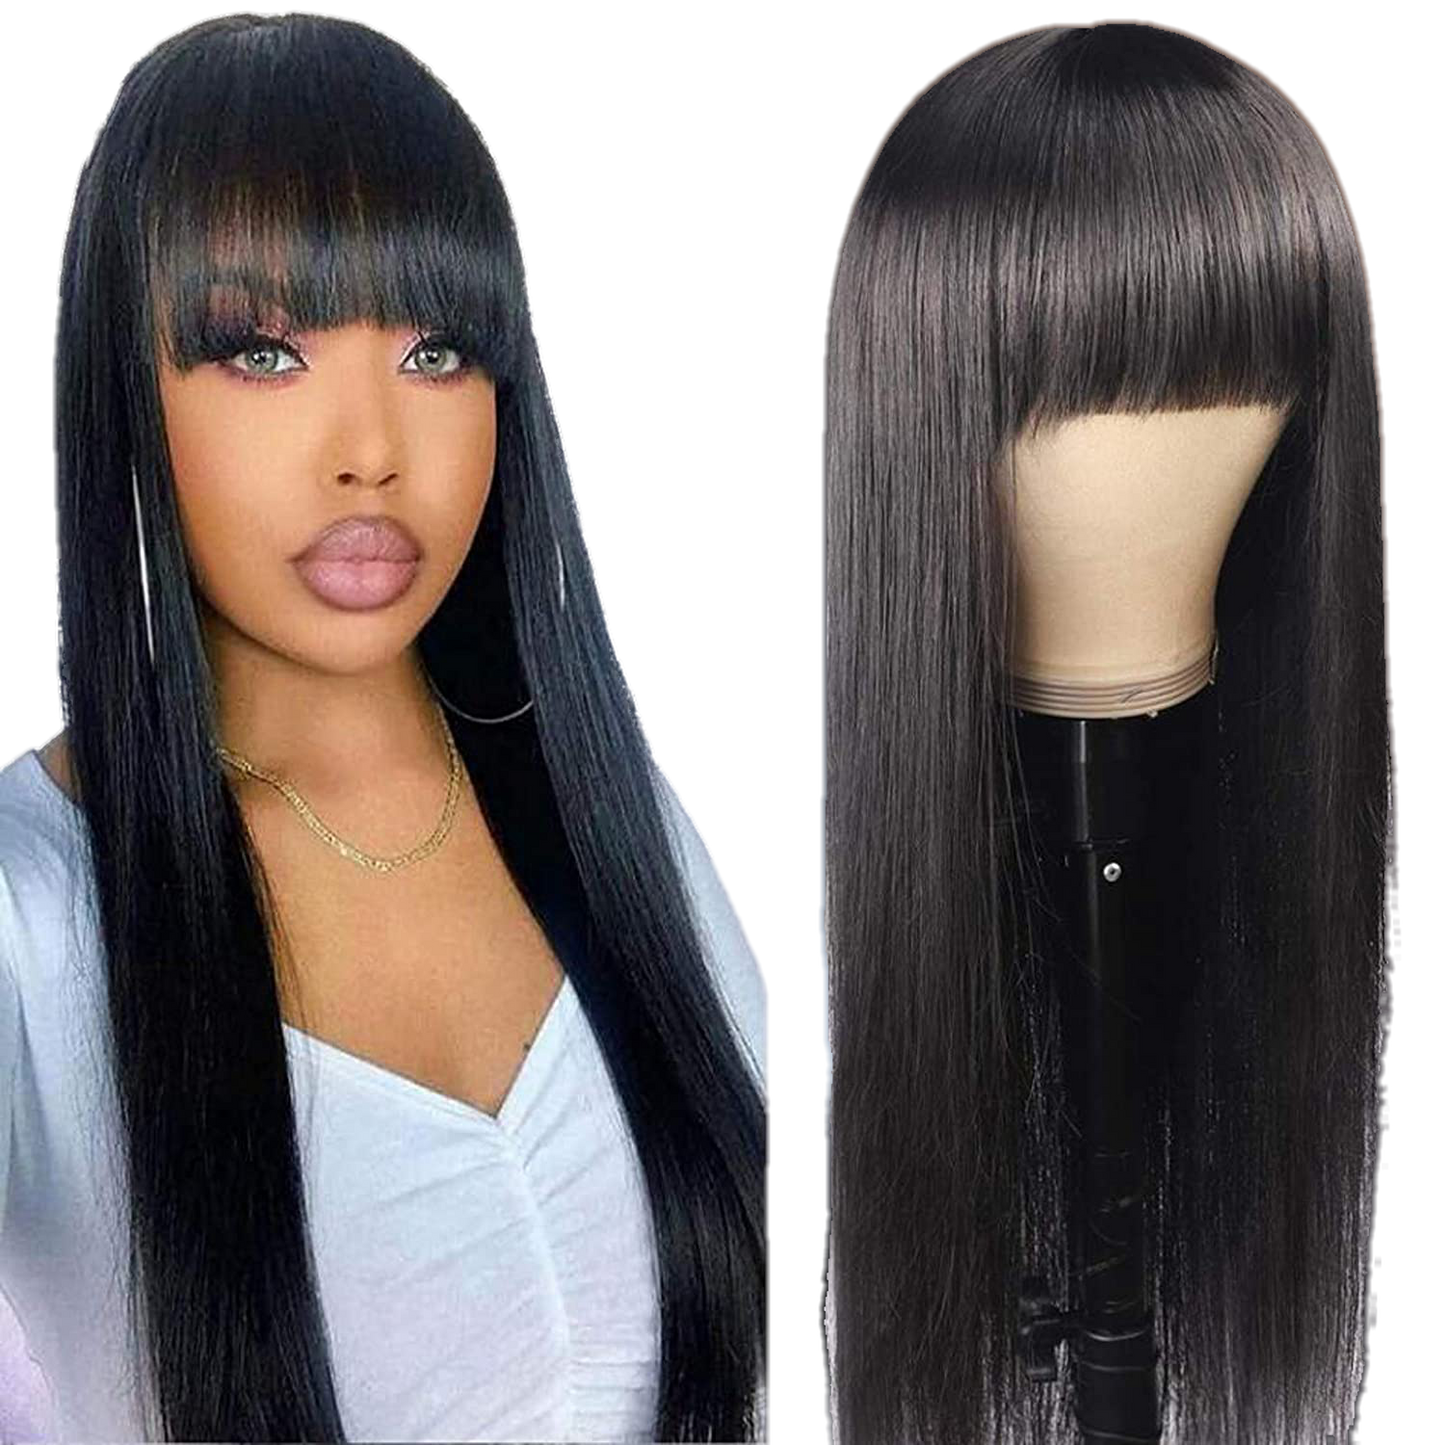 Human hair wig with bangs Natural black - VIP Extensions